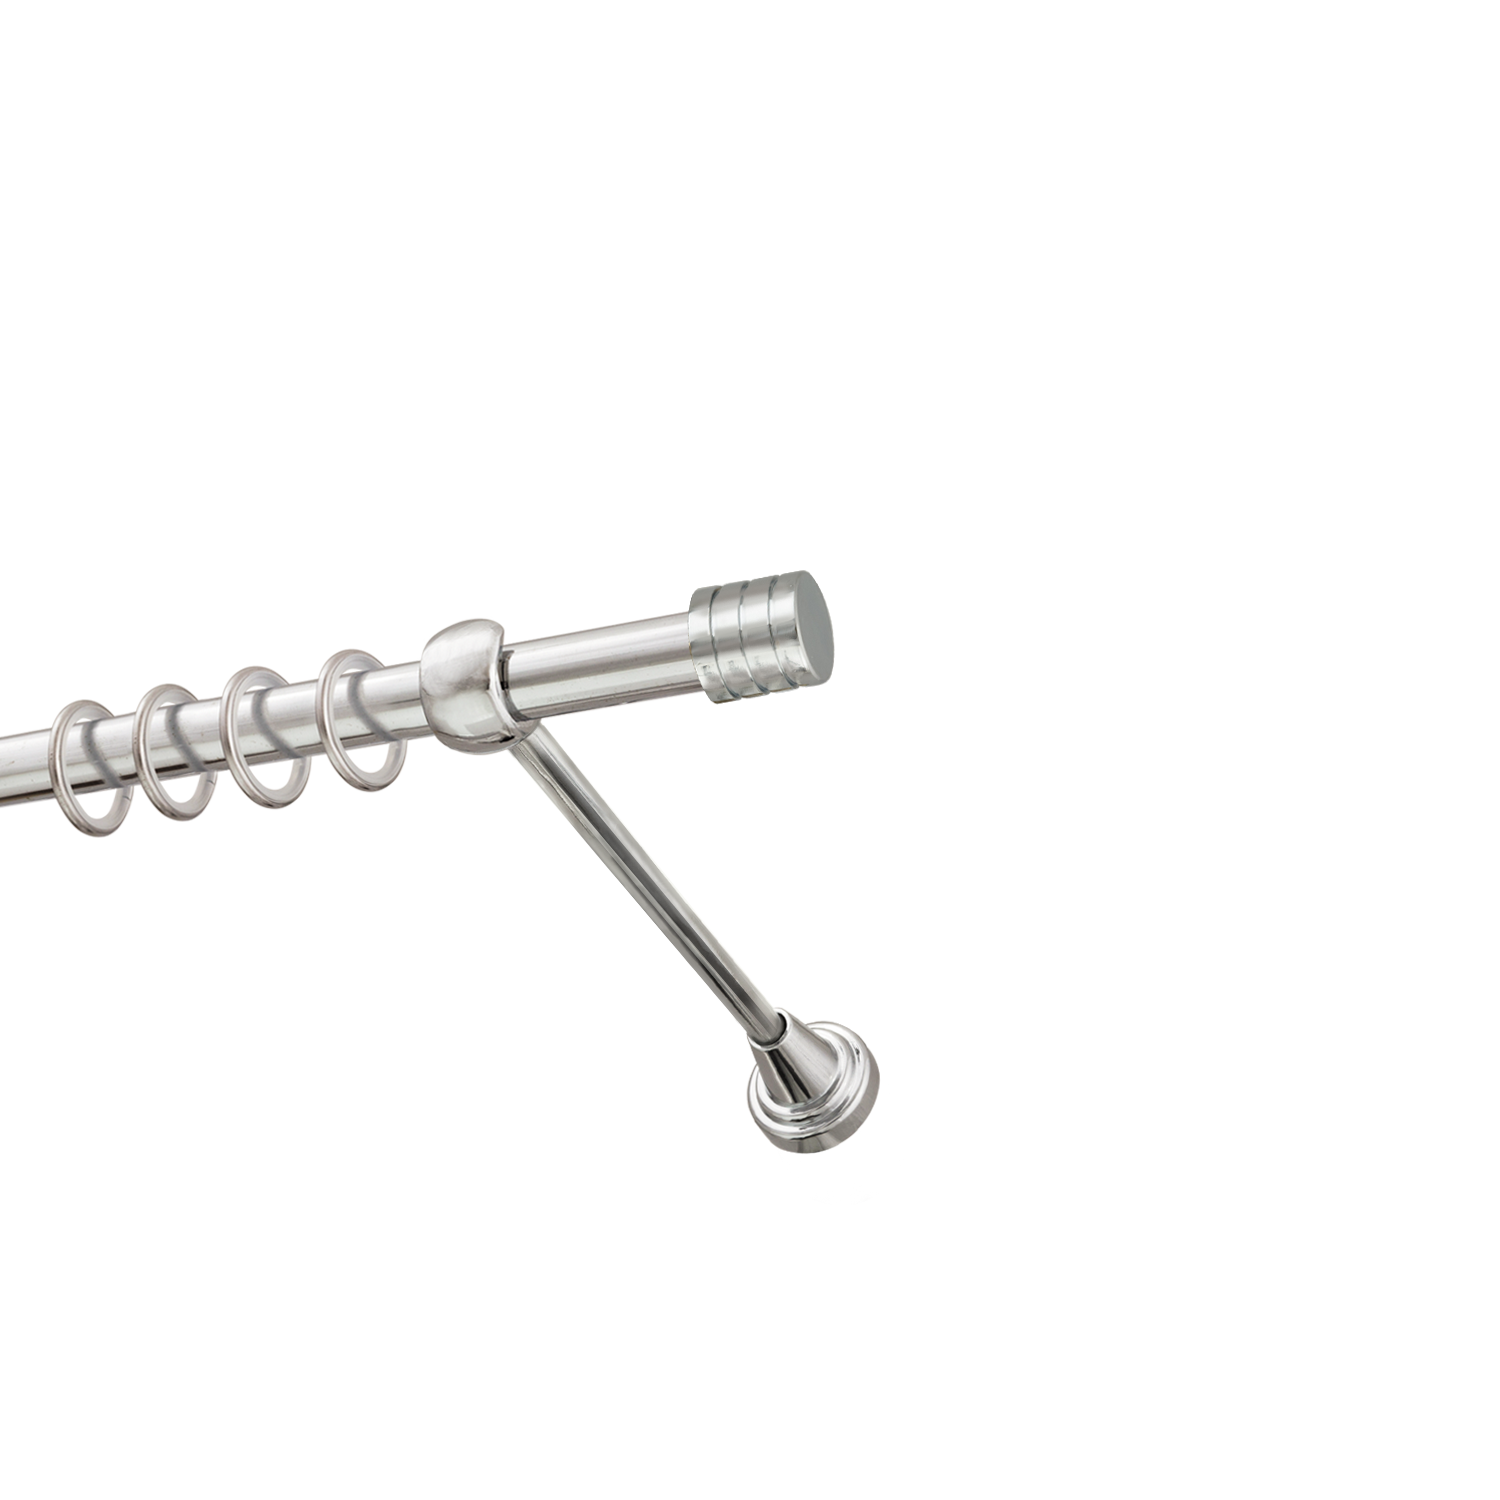 Металлический карниз для штор Подиум, однорядный 16 мм, серебро, гладкая штанга, длина 180 см - фото Wikidecor.ru